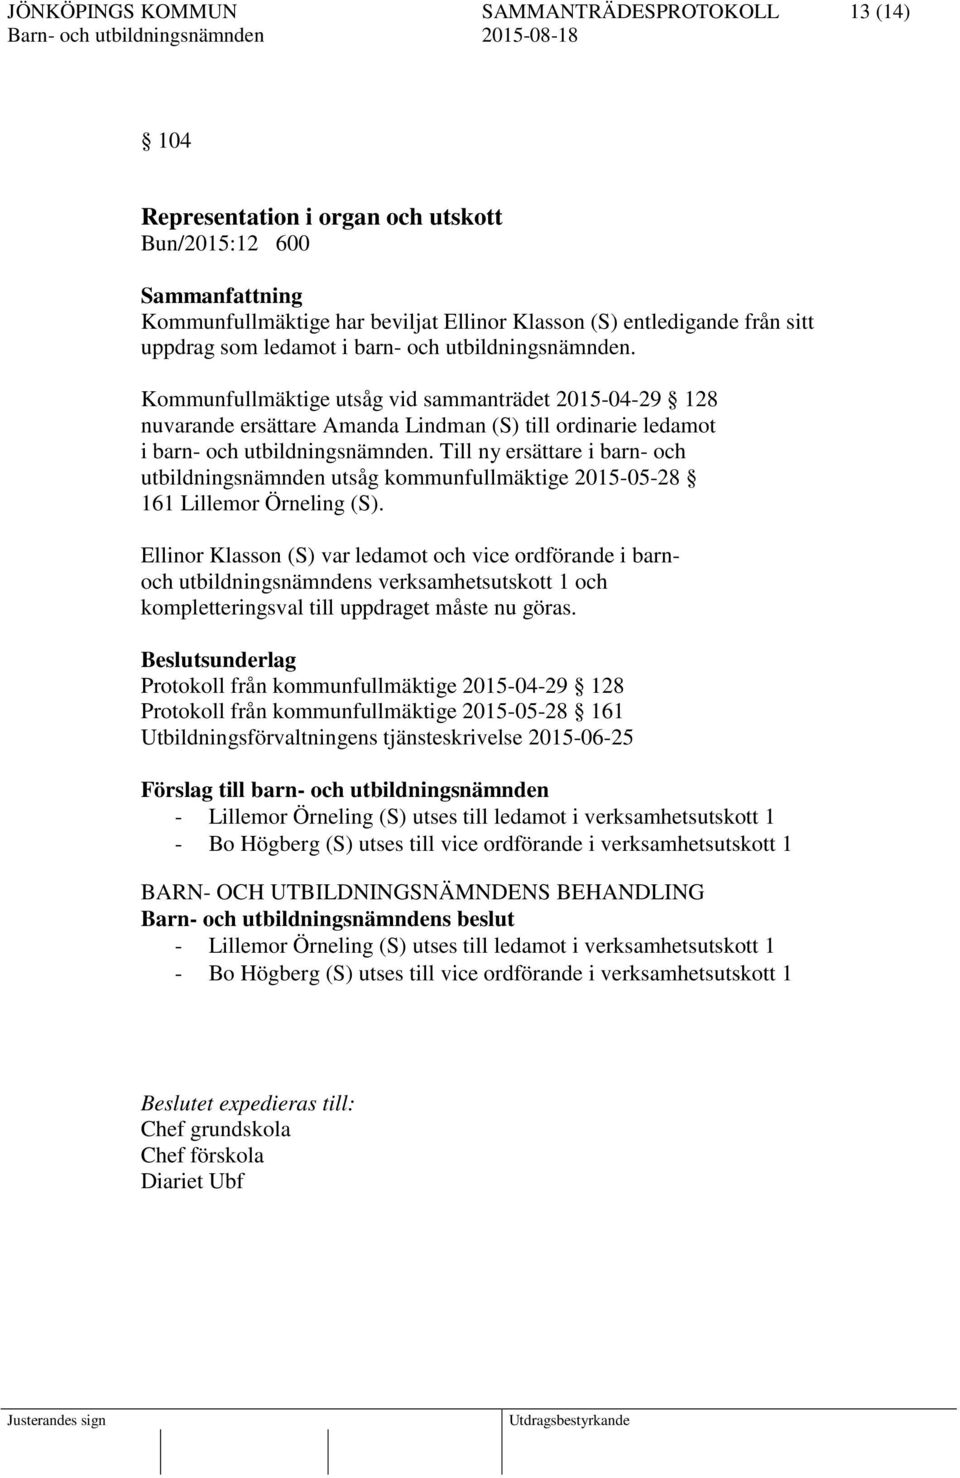 Till ny ersättare i barn- och utbildningsnämnden utsåg kommunfullmäktige 2015-05-28 161 Lillemor Örneling (S).